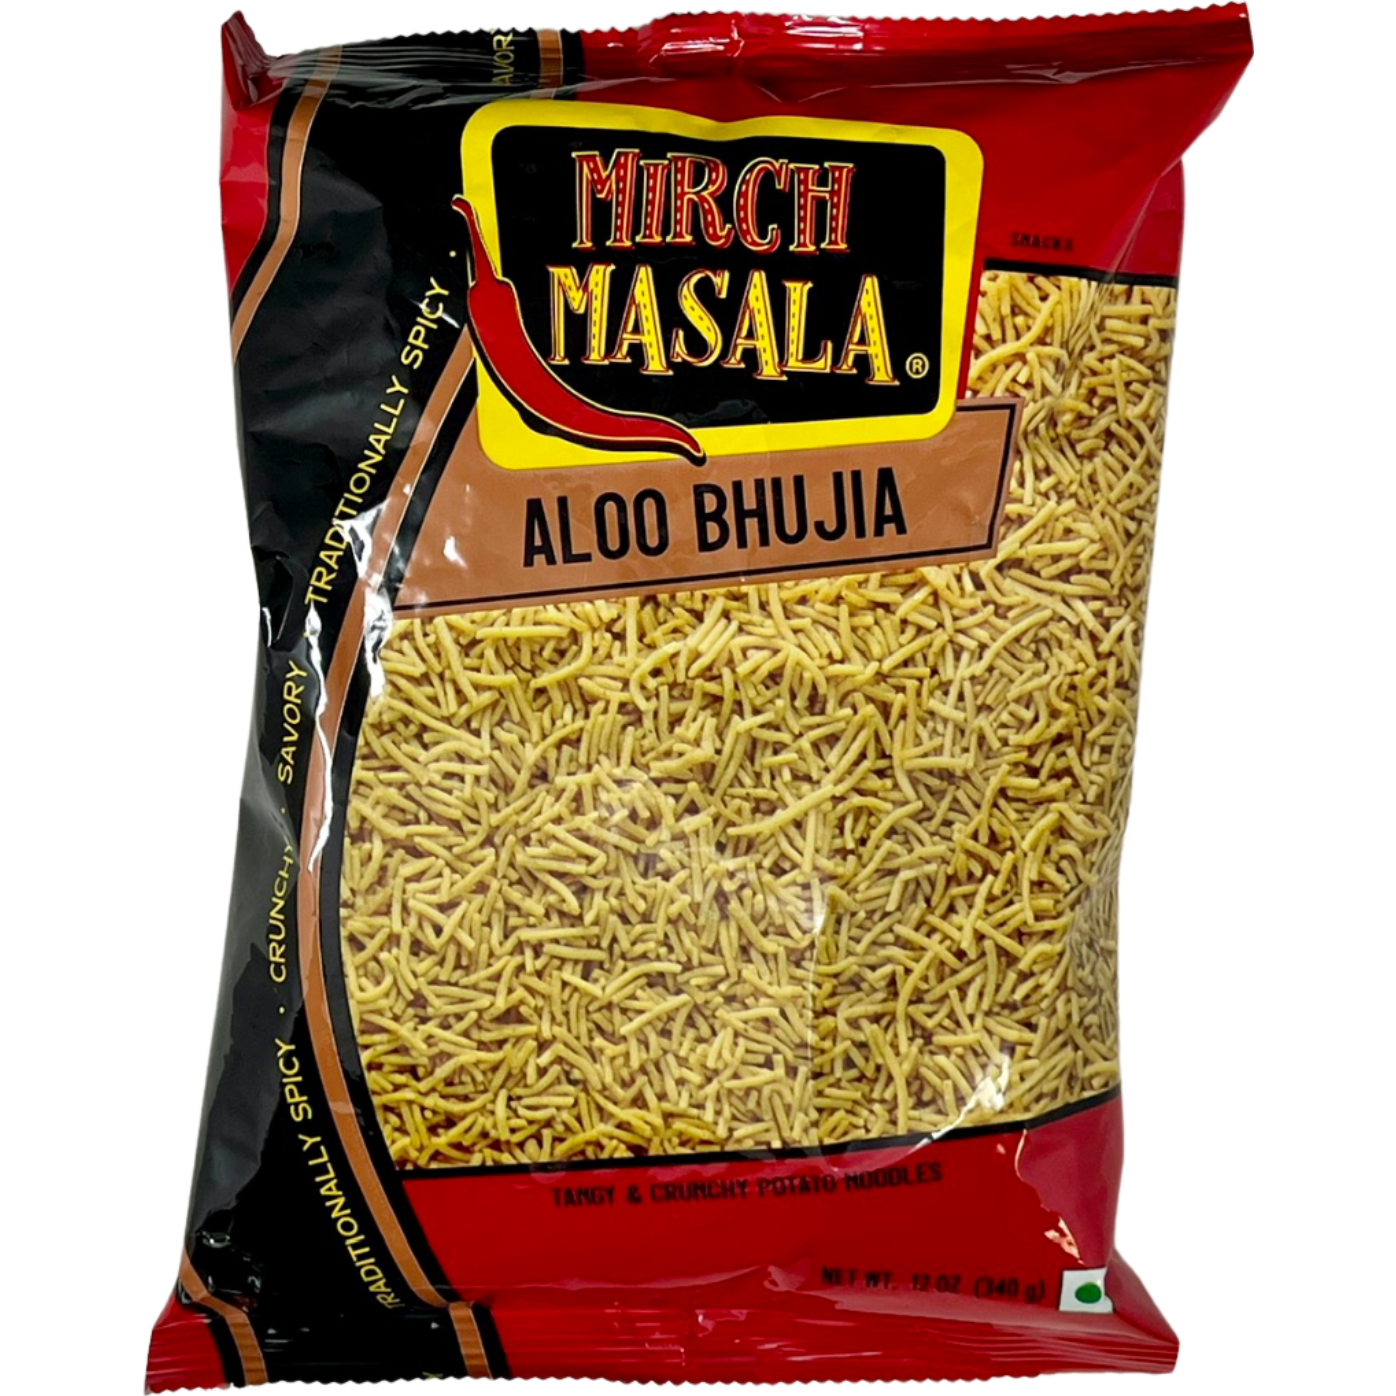 Pack of 2 - Mirch Masala Aloo Bhujia - 12 Oz (340 Gm)